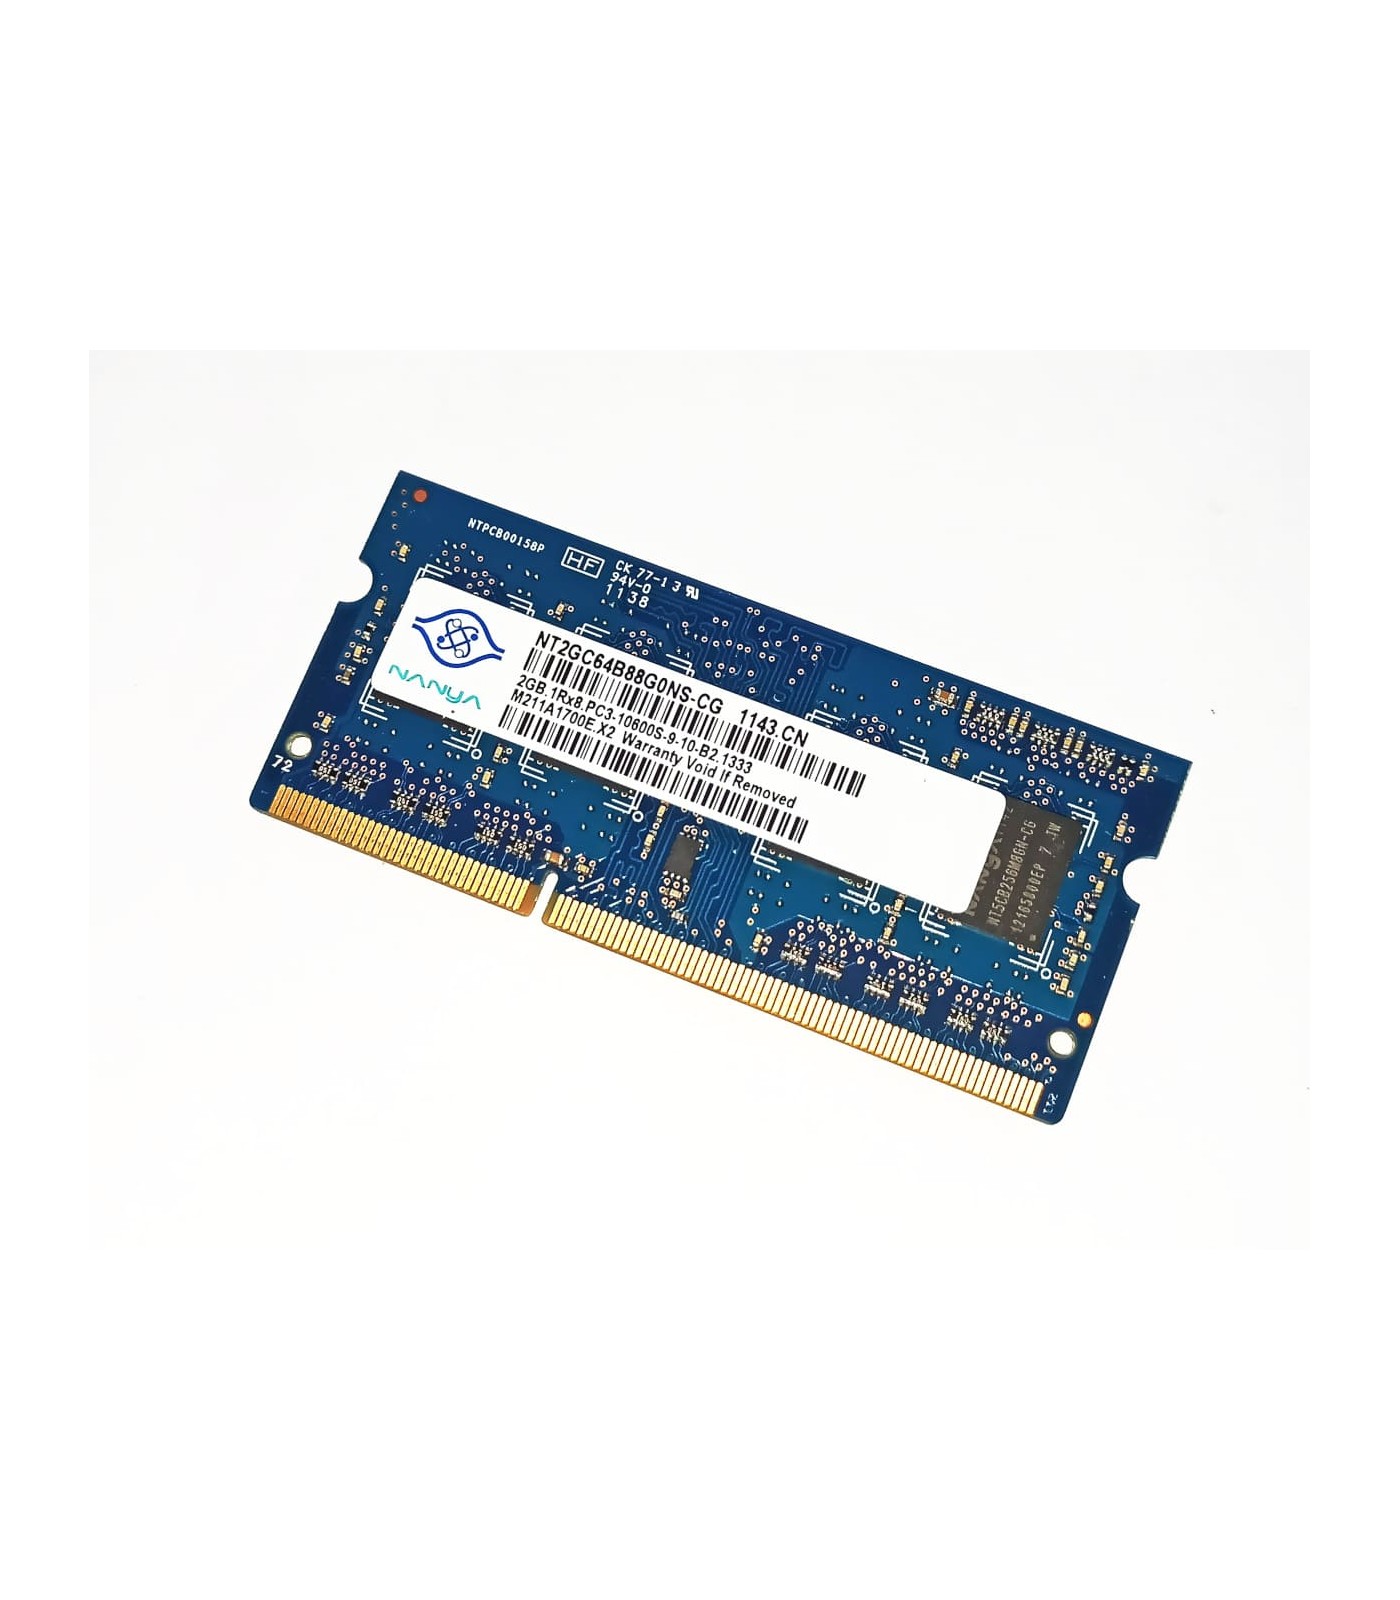 Używana pamięć RAM do laptopa DDR3 2GB 1333mhz